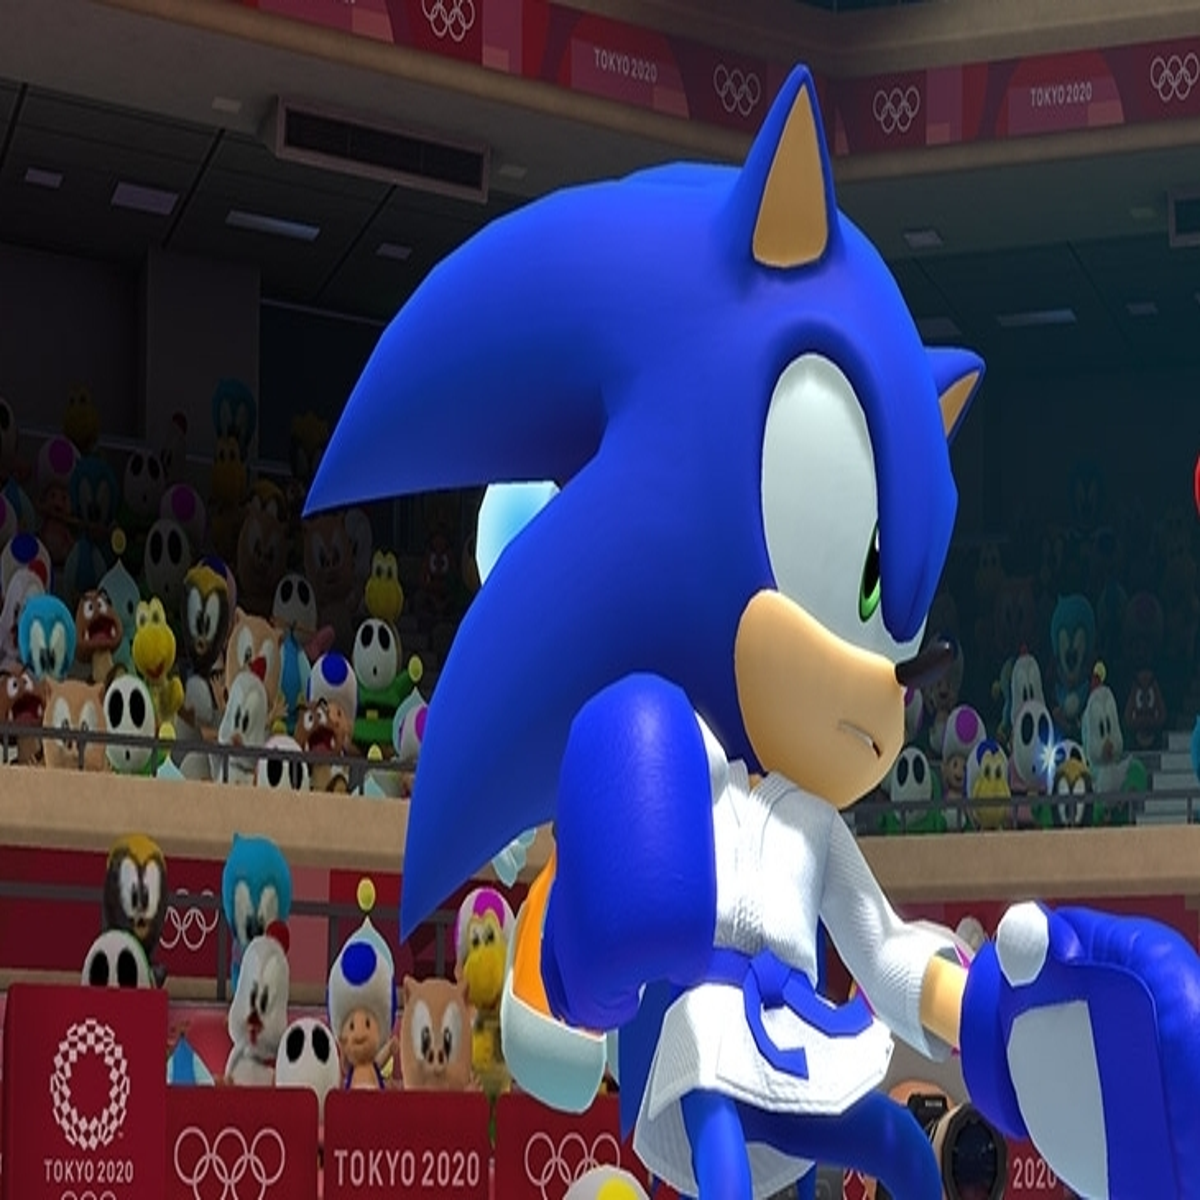 Produtor de Yakuza deseja se envolver com um jogo de Sonic